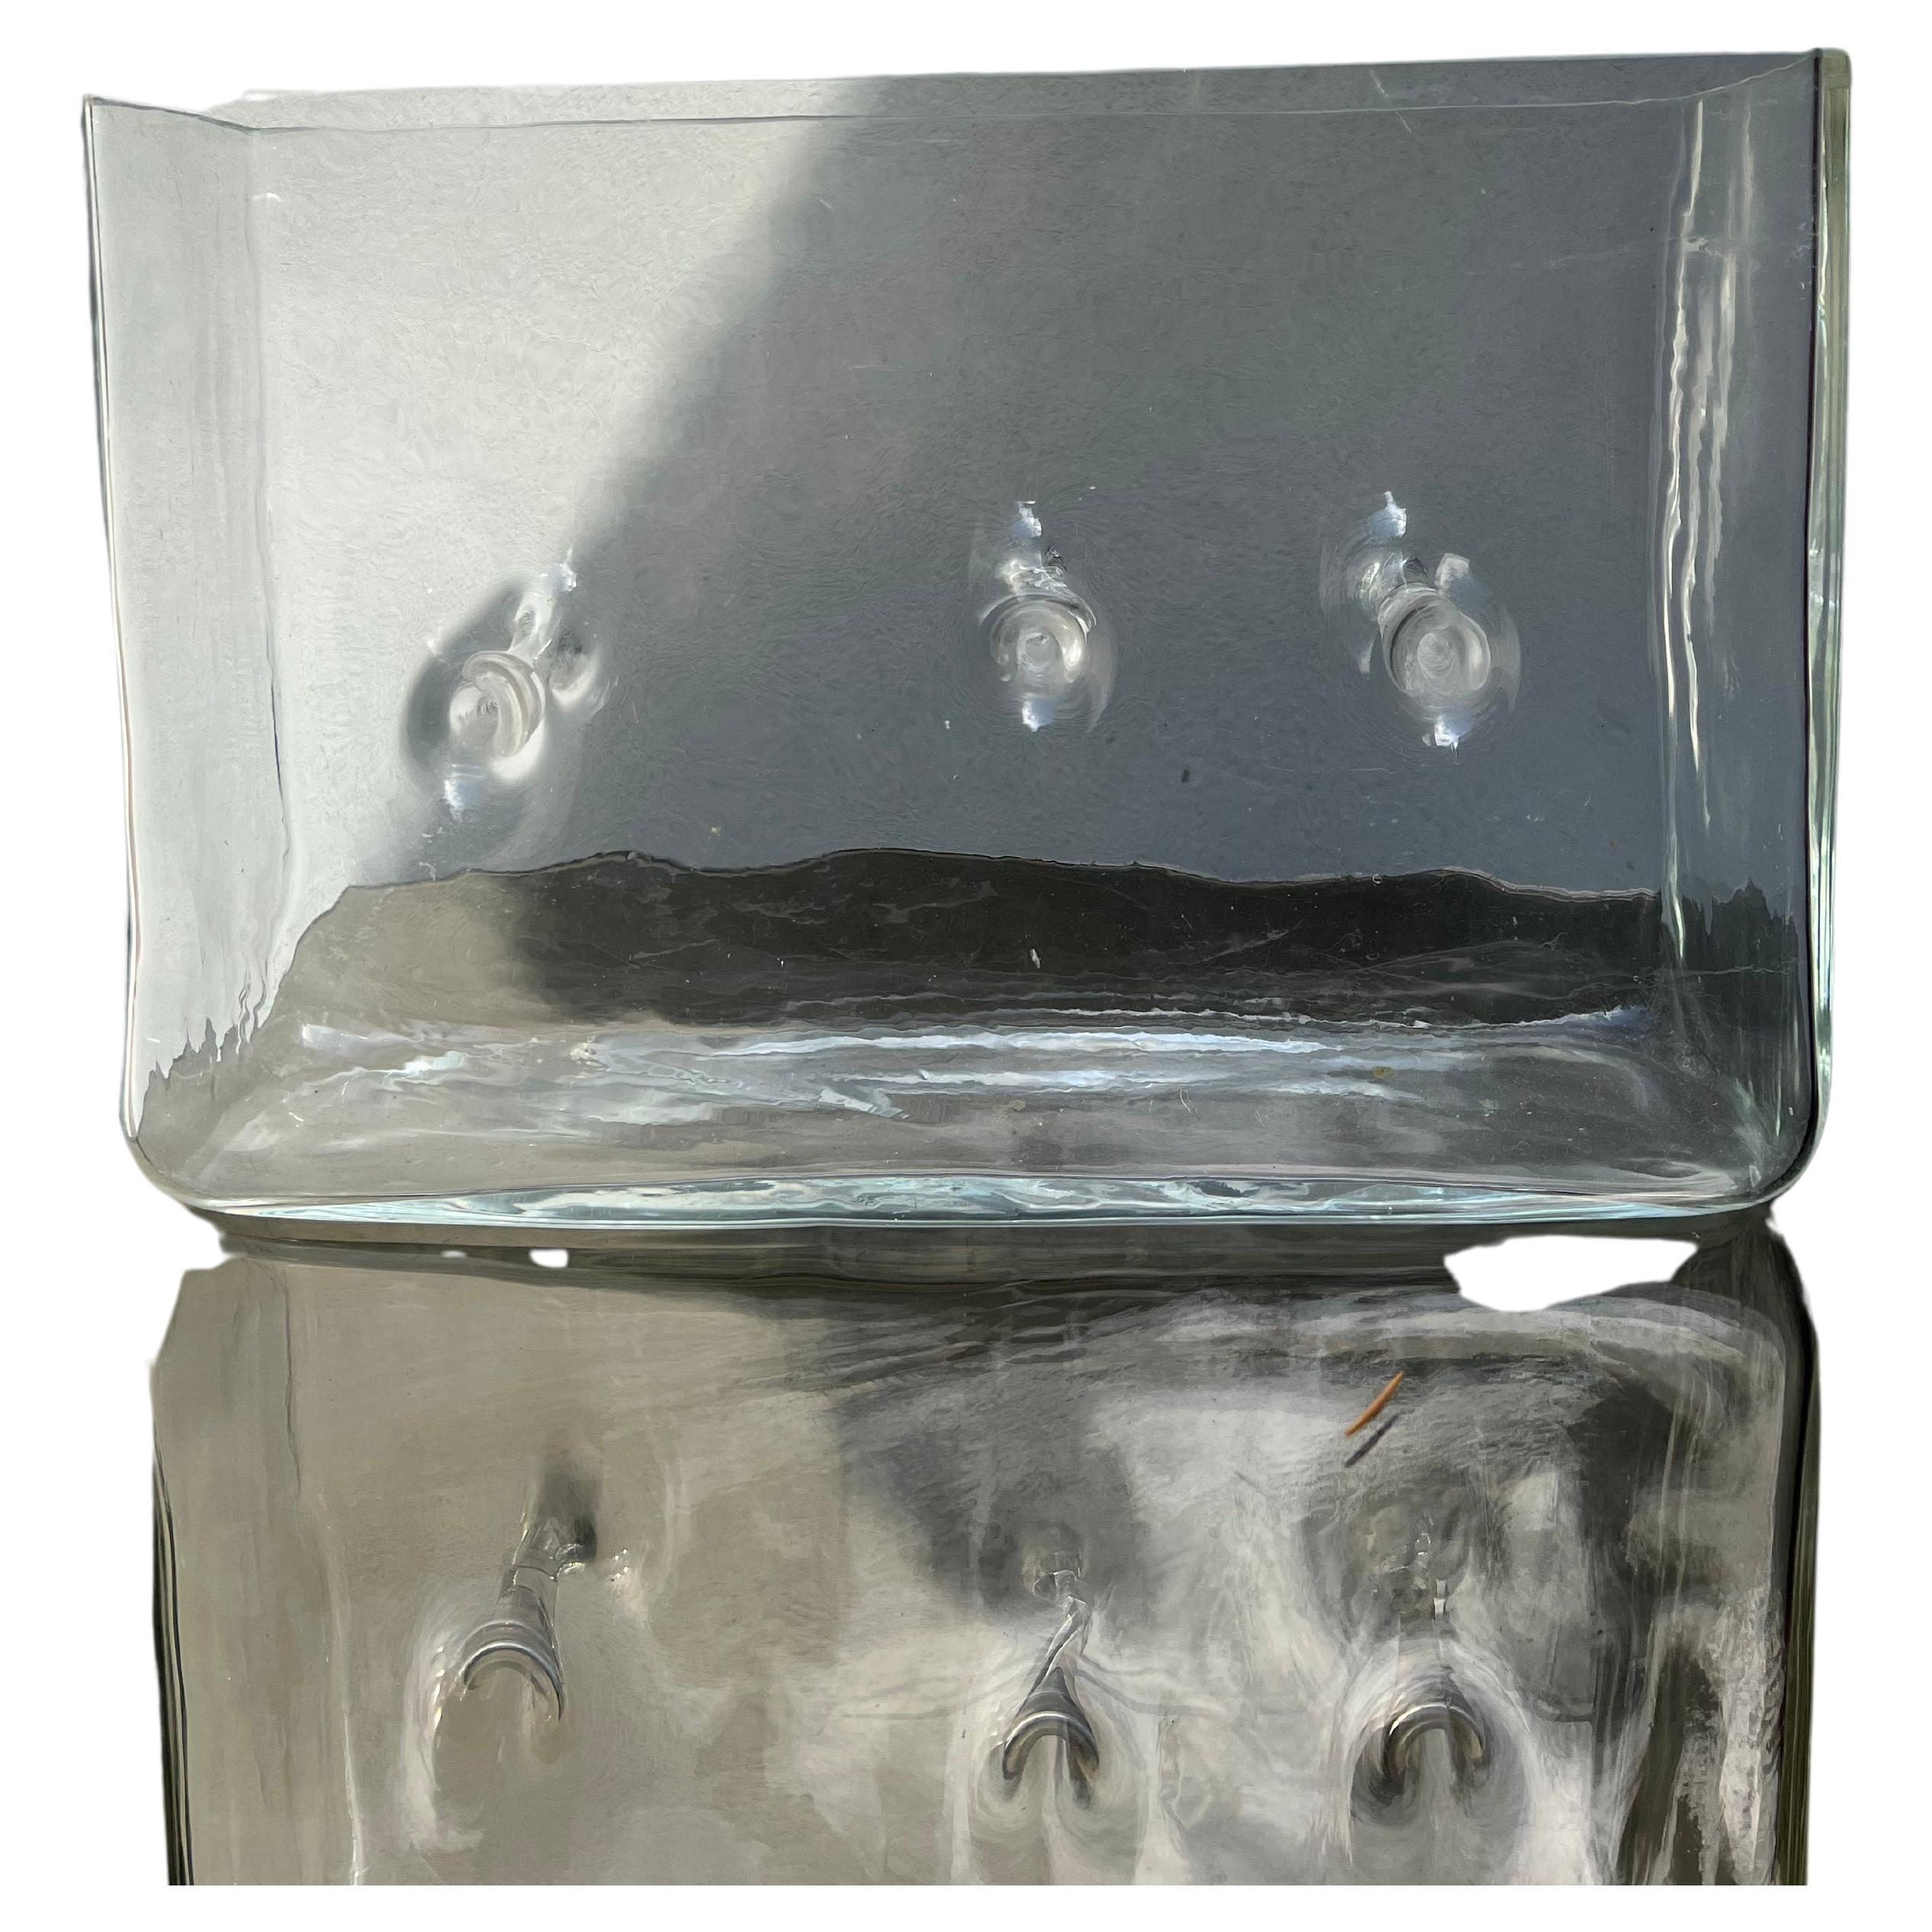 Vaso aus vetro – Renato toso – 1968 – Serie Repetai – Glas 